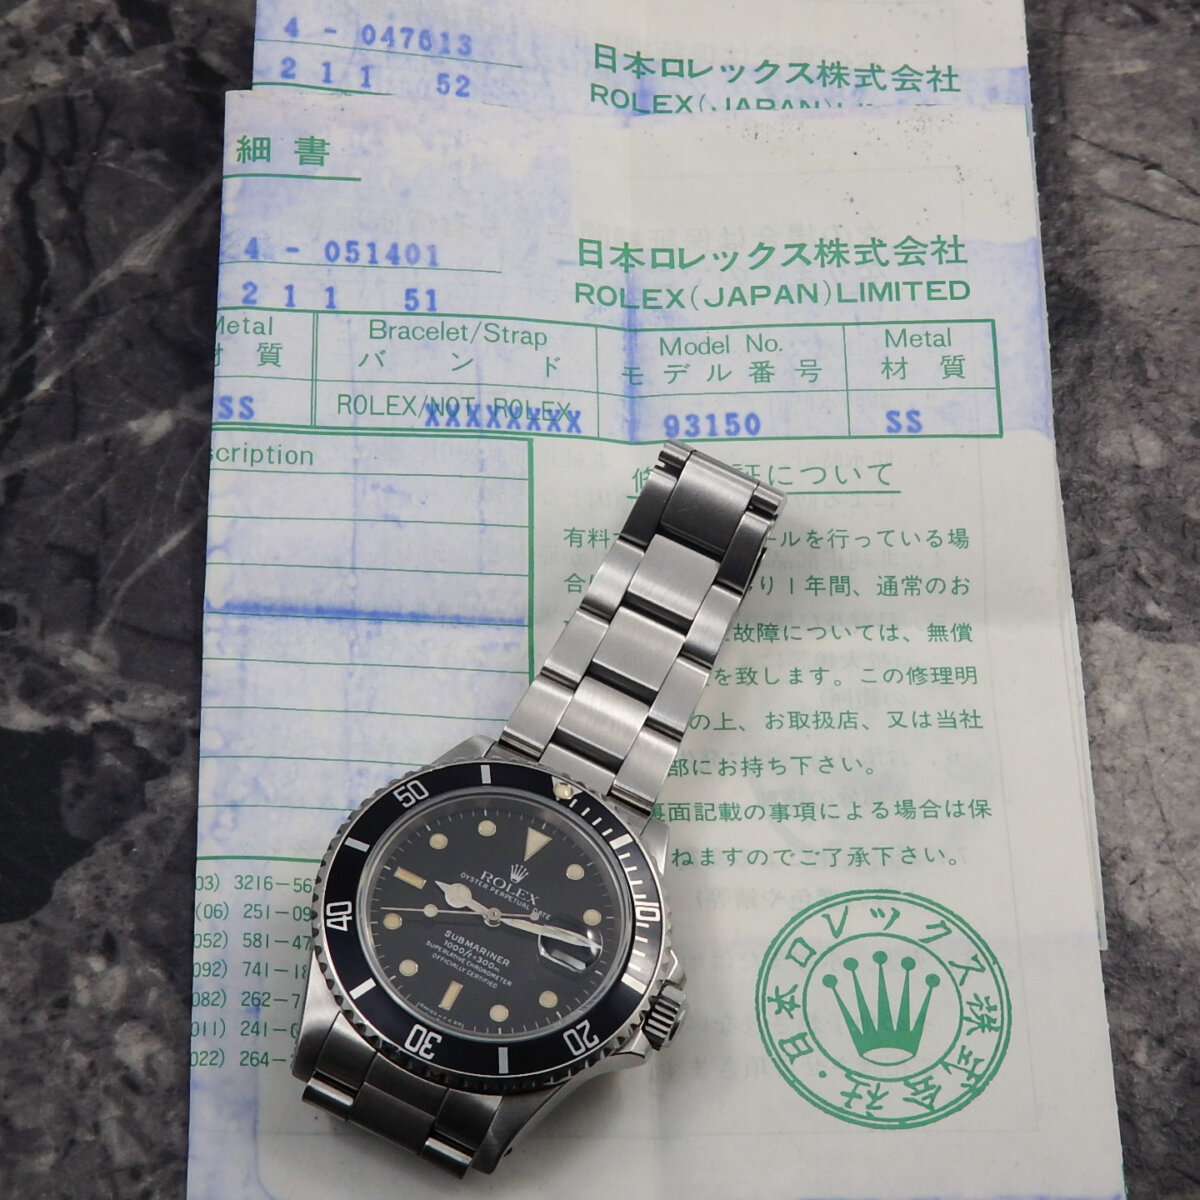 ロレックス サブマリーナ デイト トリプルゼロ 168000 オールトリチウム | アンティーク時計の販売ならアンティークウォッチライフ